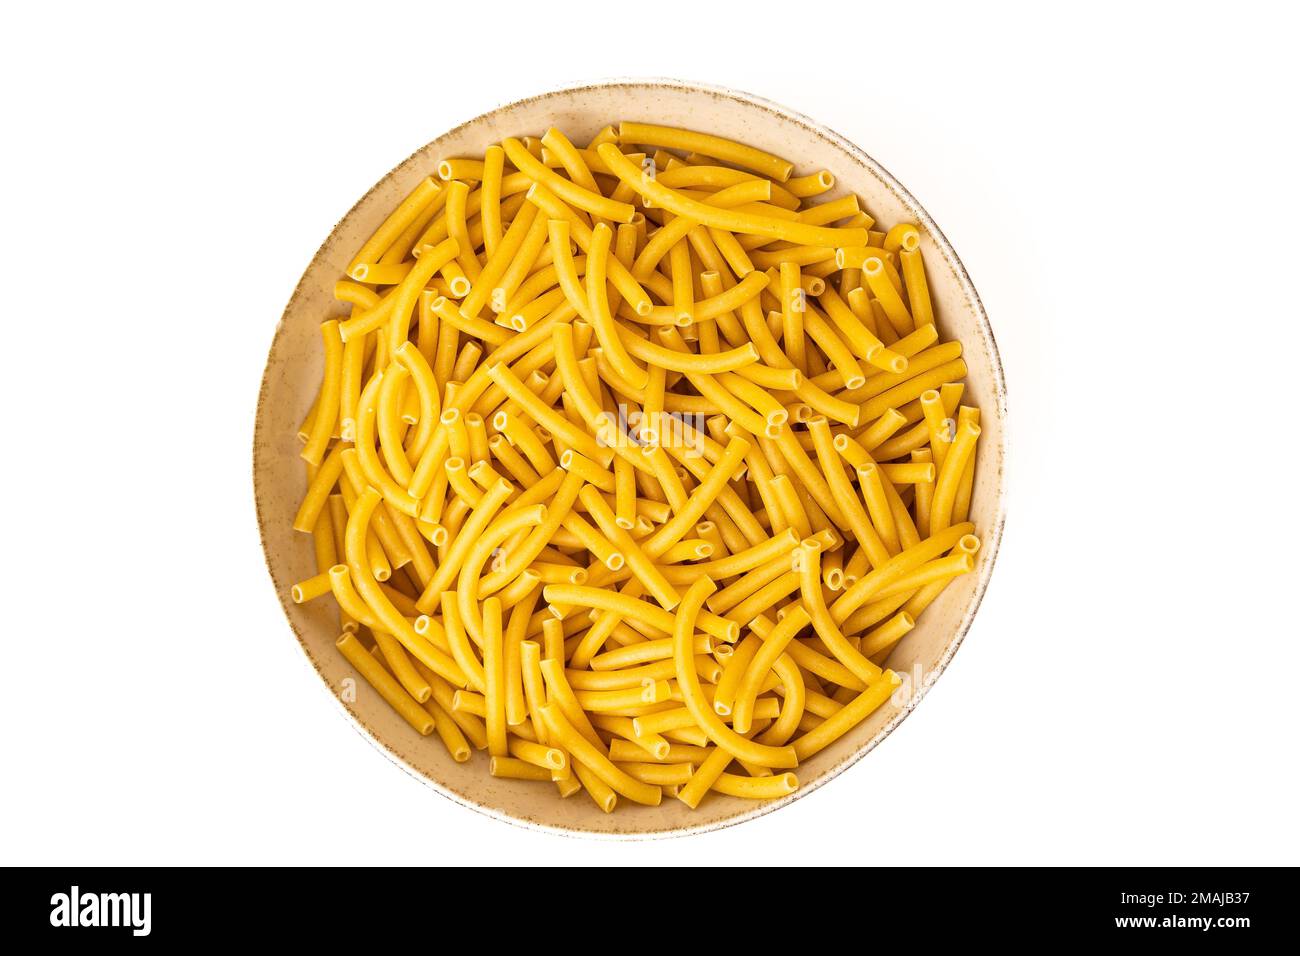 Pasta in a stoneware dish Stock Photo